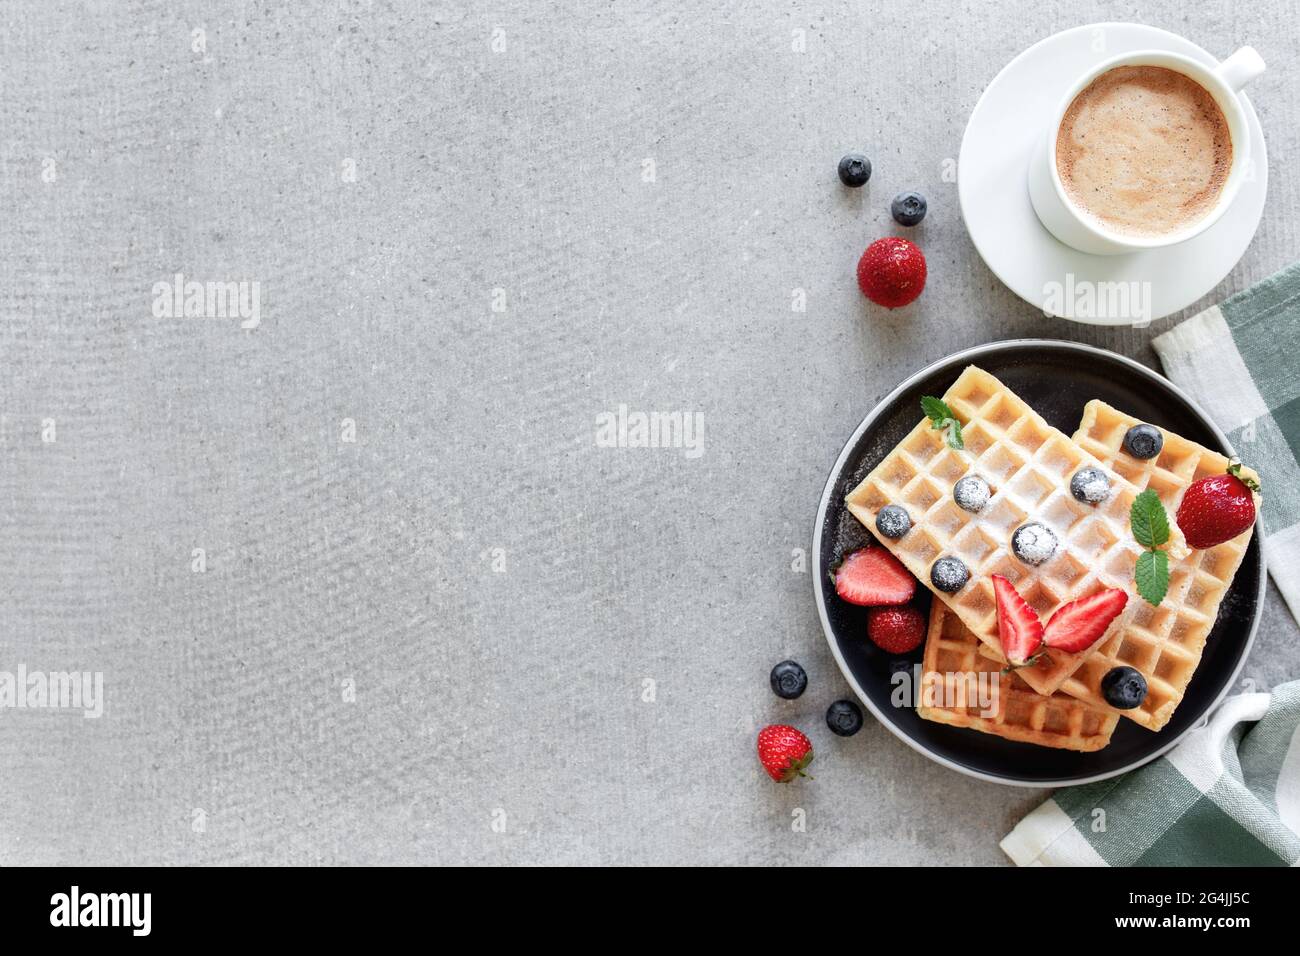 Stapel von zuckerpulverförmigen Waffeln mit Honig auf einem Teller auf dem Handtuch und grauen Beton- oder Schiefertisch mit Heidelbeere, gehackten Erdbeeren und Minzblättern Stockfoto